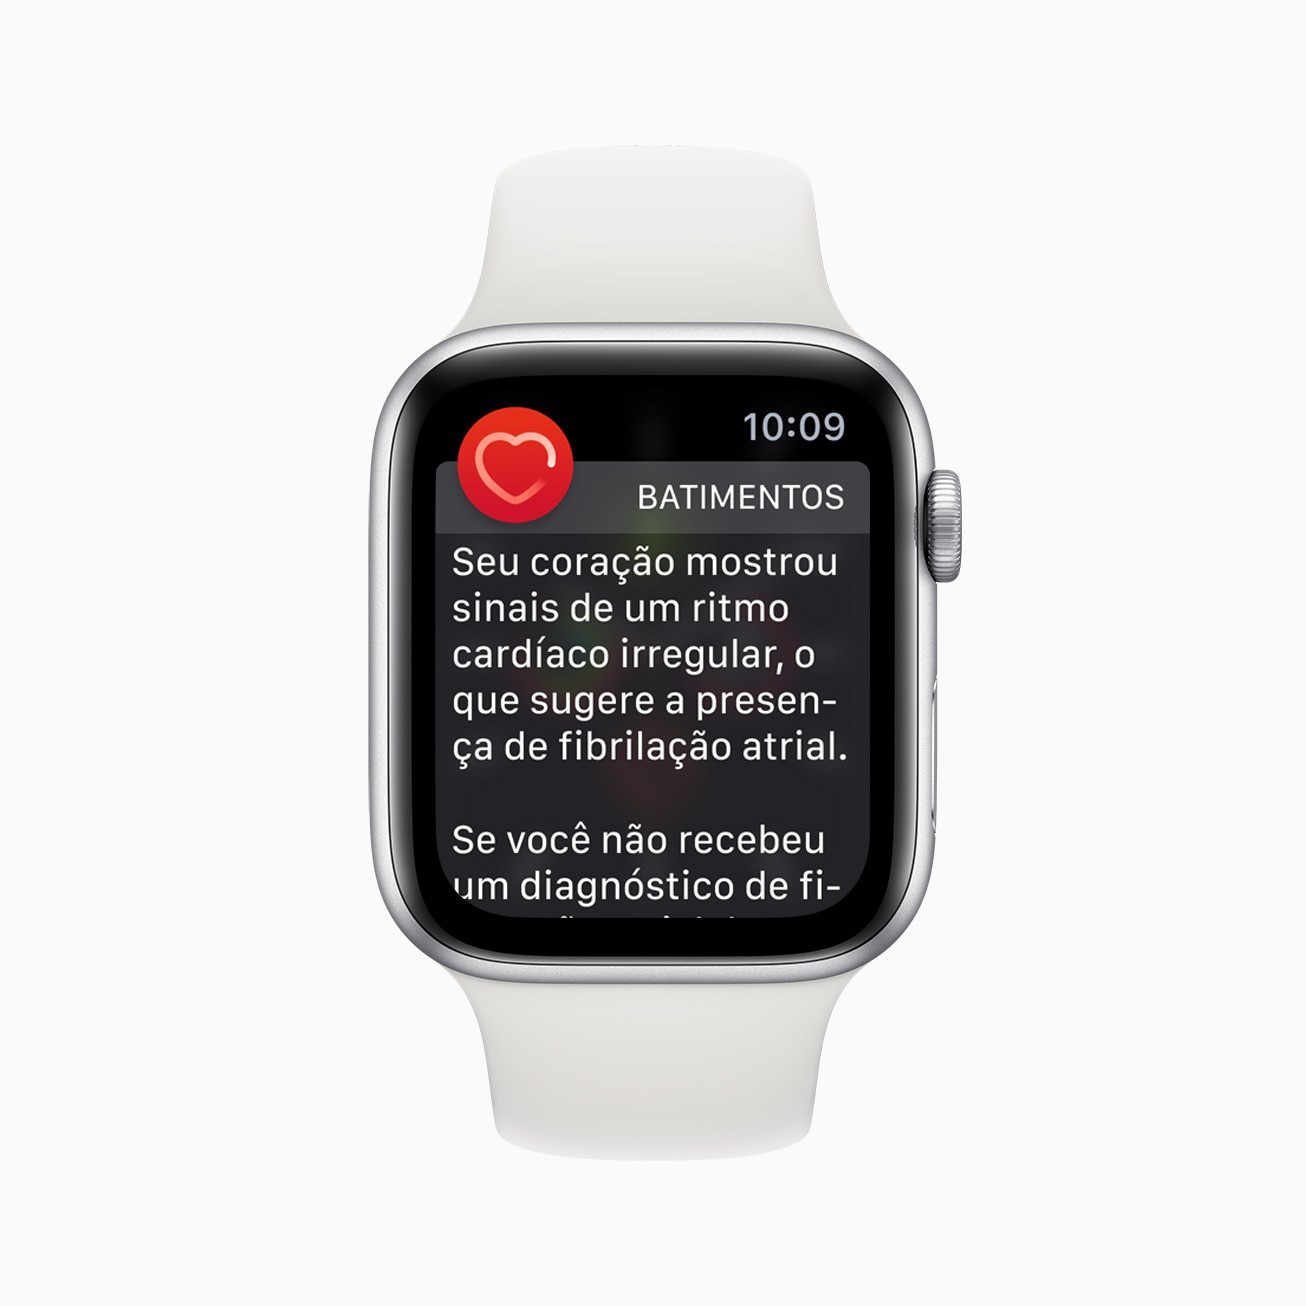 O Apple Watch Series 1 ou posterior com watchOS 6.2.8 envia uma notificação se identificar ritmos cardíacos irregulares que possam indicar fibrilação atrial. (Foto: Divulgação/Apple)